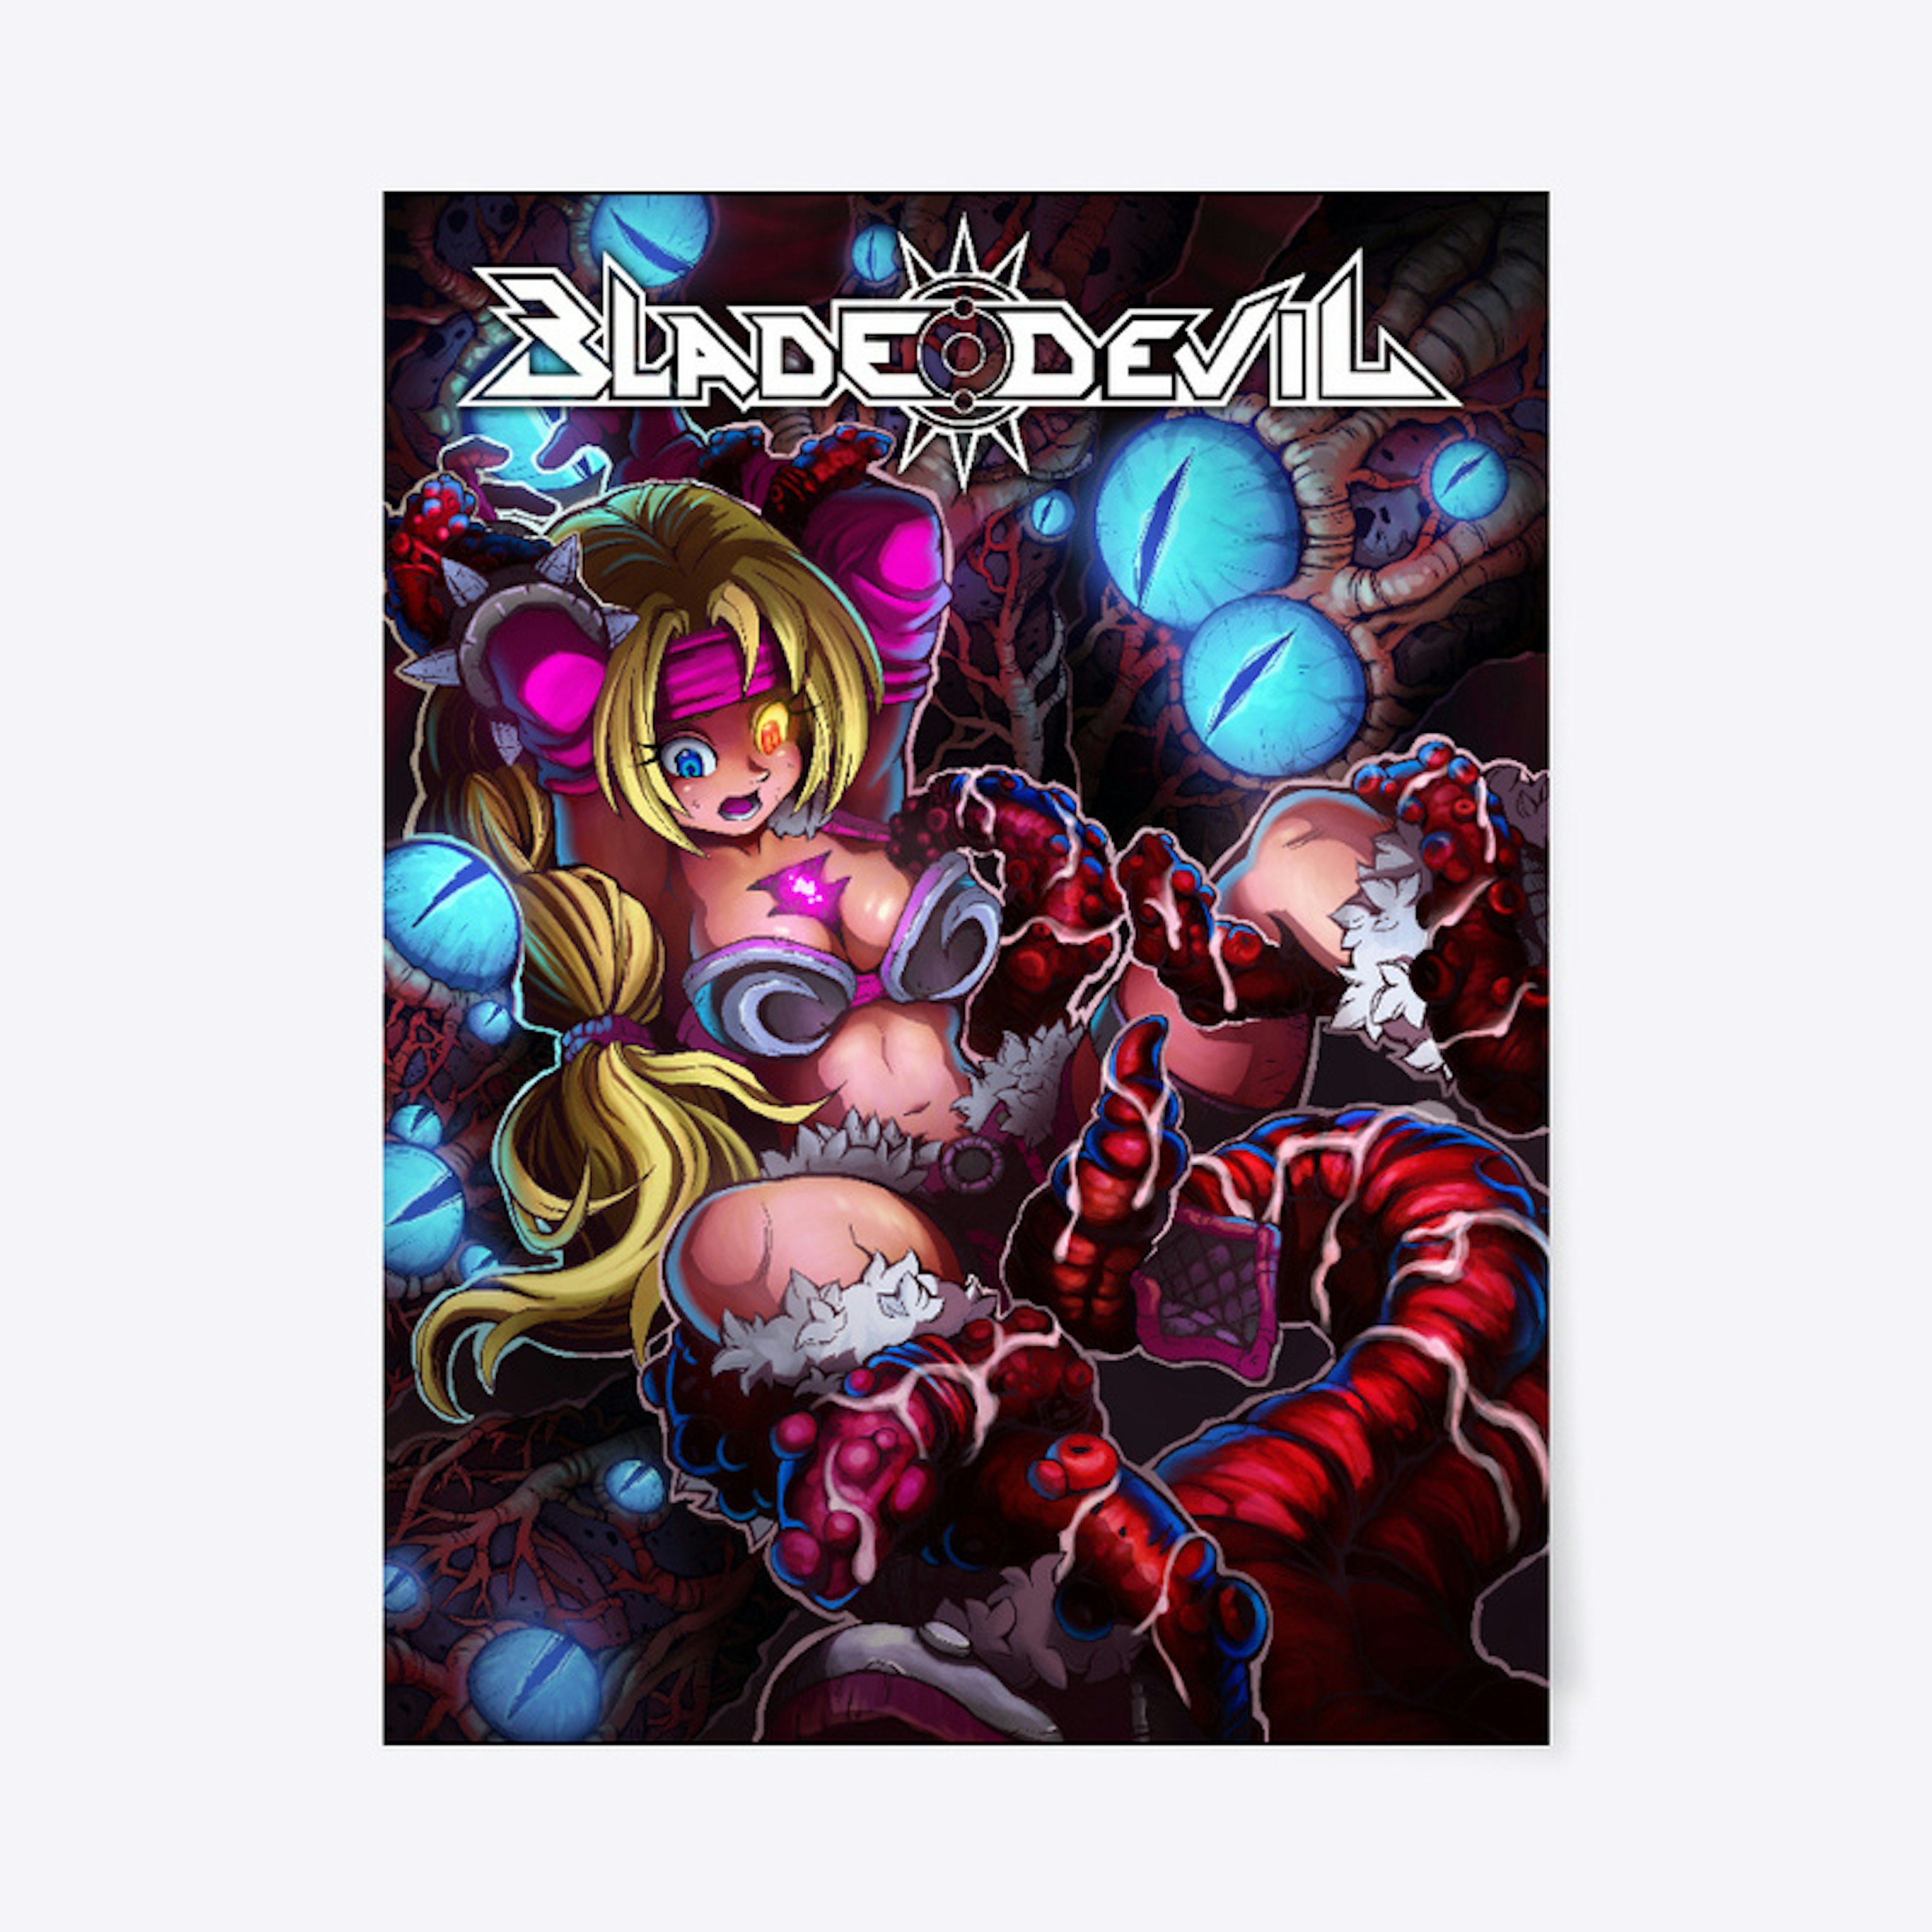 Blade Devil variant cover